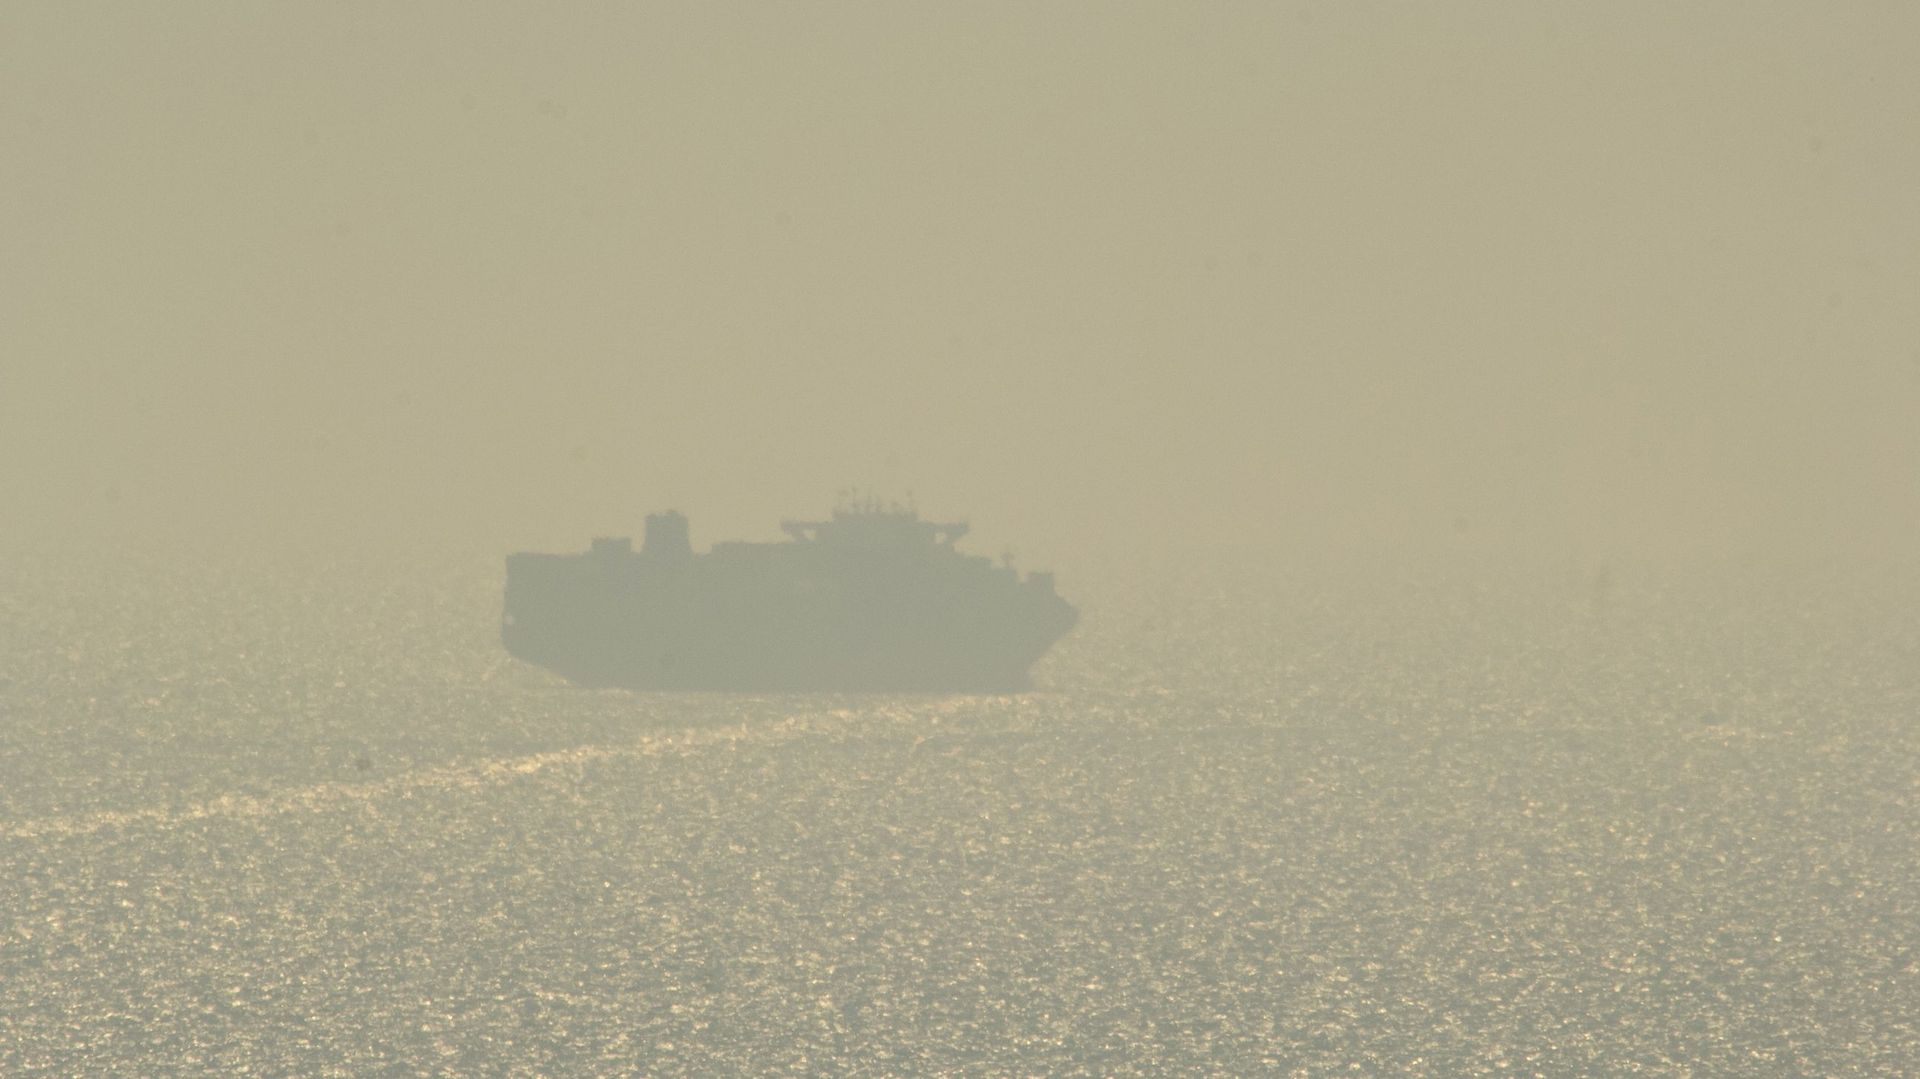 Guerra in Ucraina: la prima nave da carico dal porto di Odessa si dirige verso la Turchia (Guarda di nuovo le nostre vite)